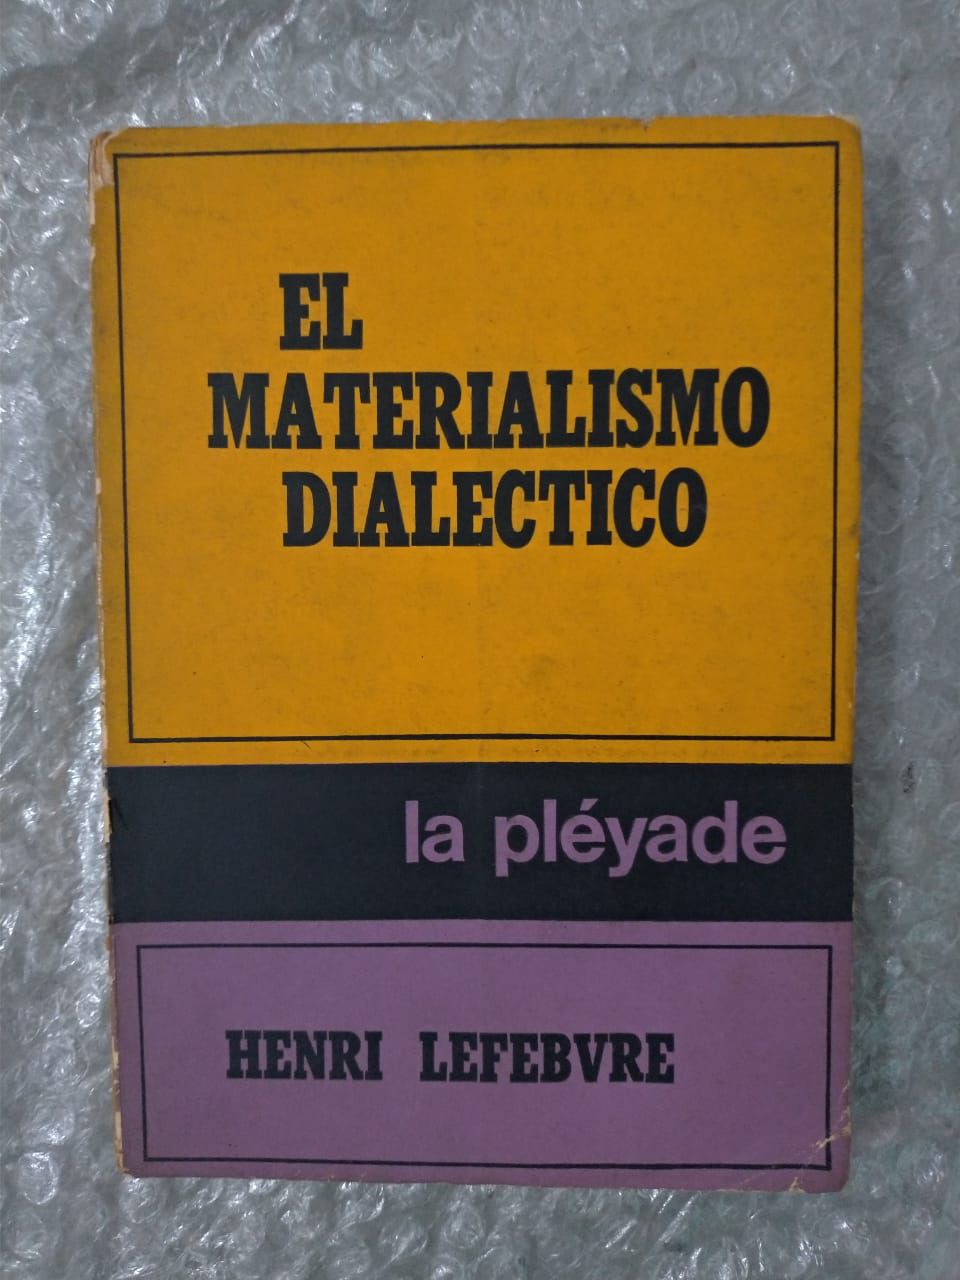 MESCHONNIC, Henri. Poética Do Traduzir PDF, PDF